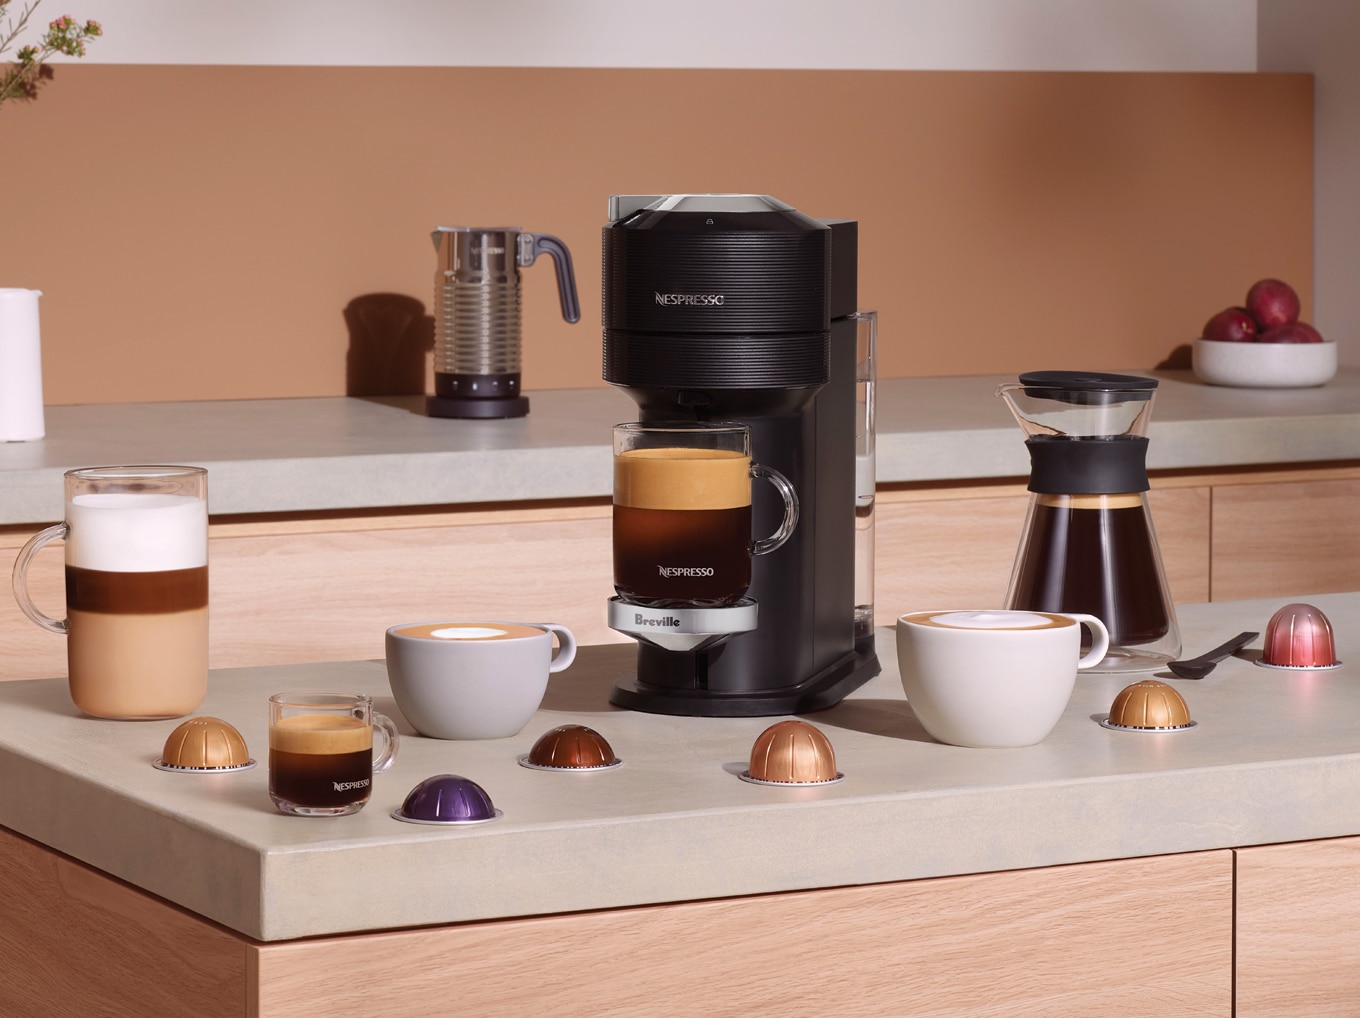 Registrera en kaffemaskin köpt via en återförsäljare | Nespresso Kanada